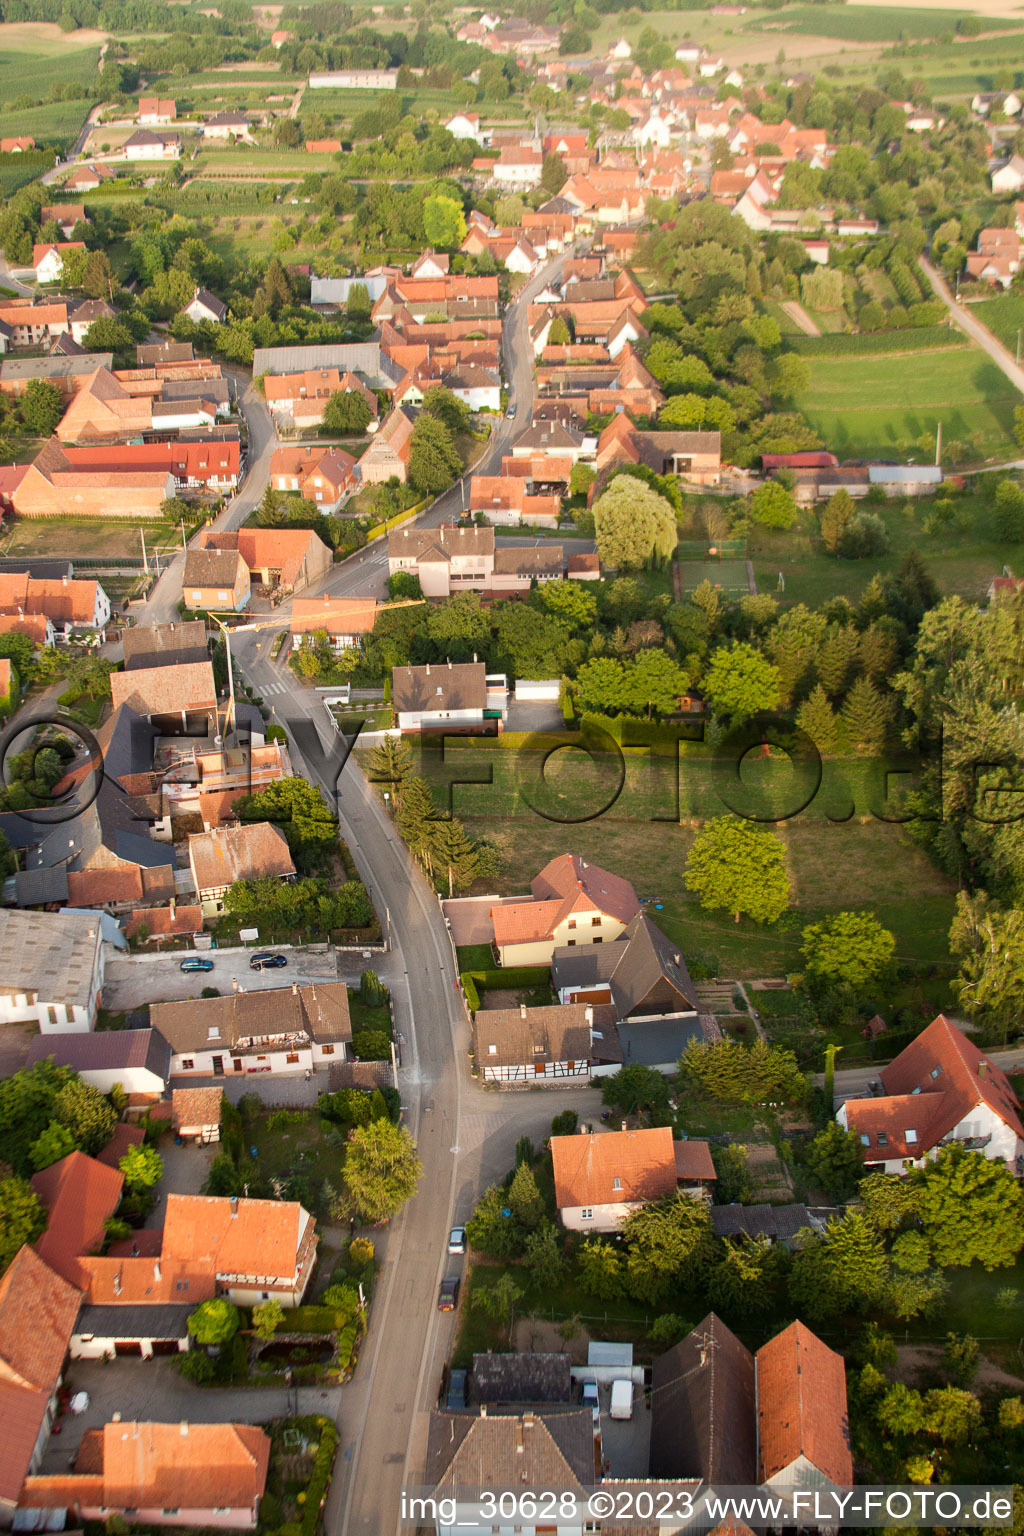 Wintzenbach dans le département Bas Rhin, France d'un drone